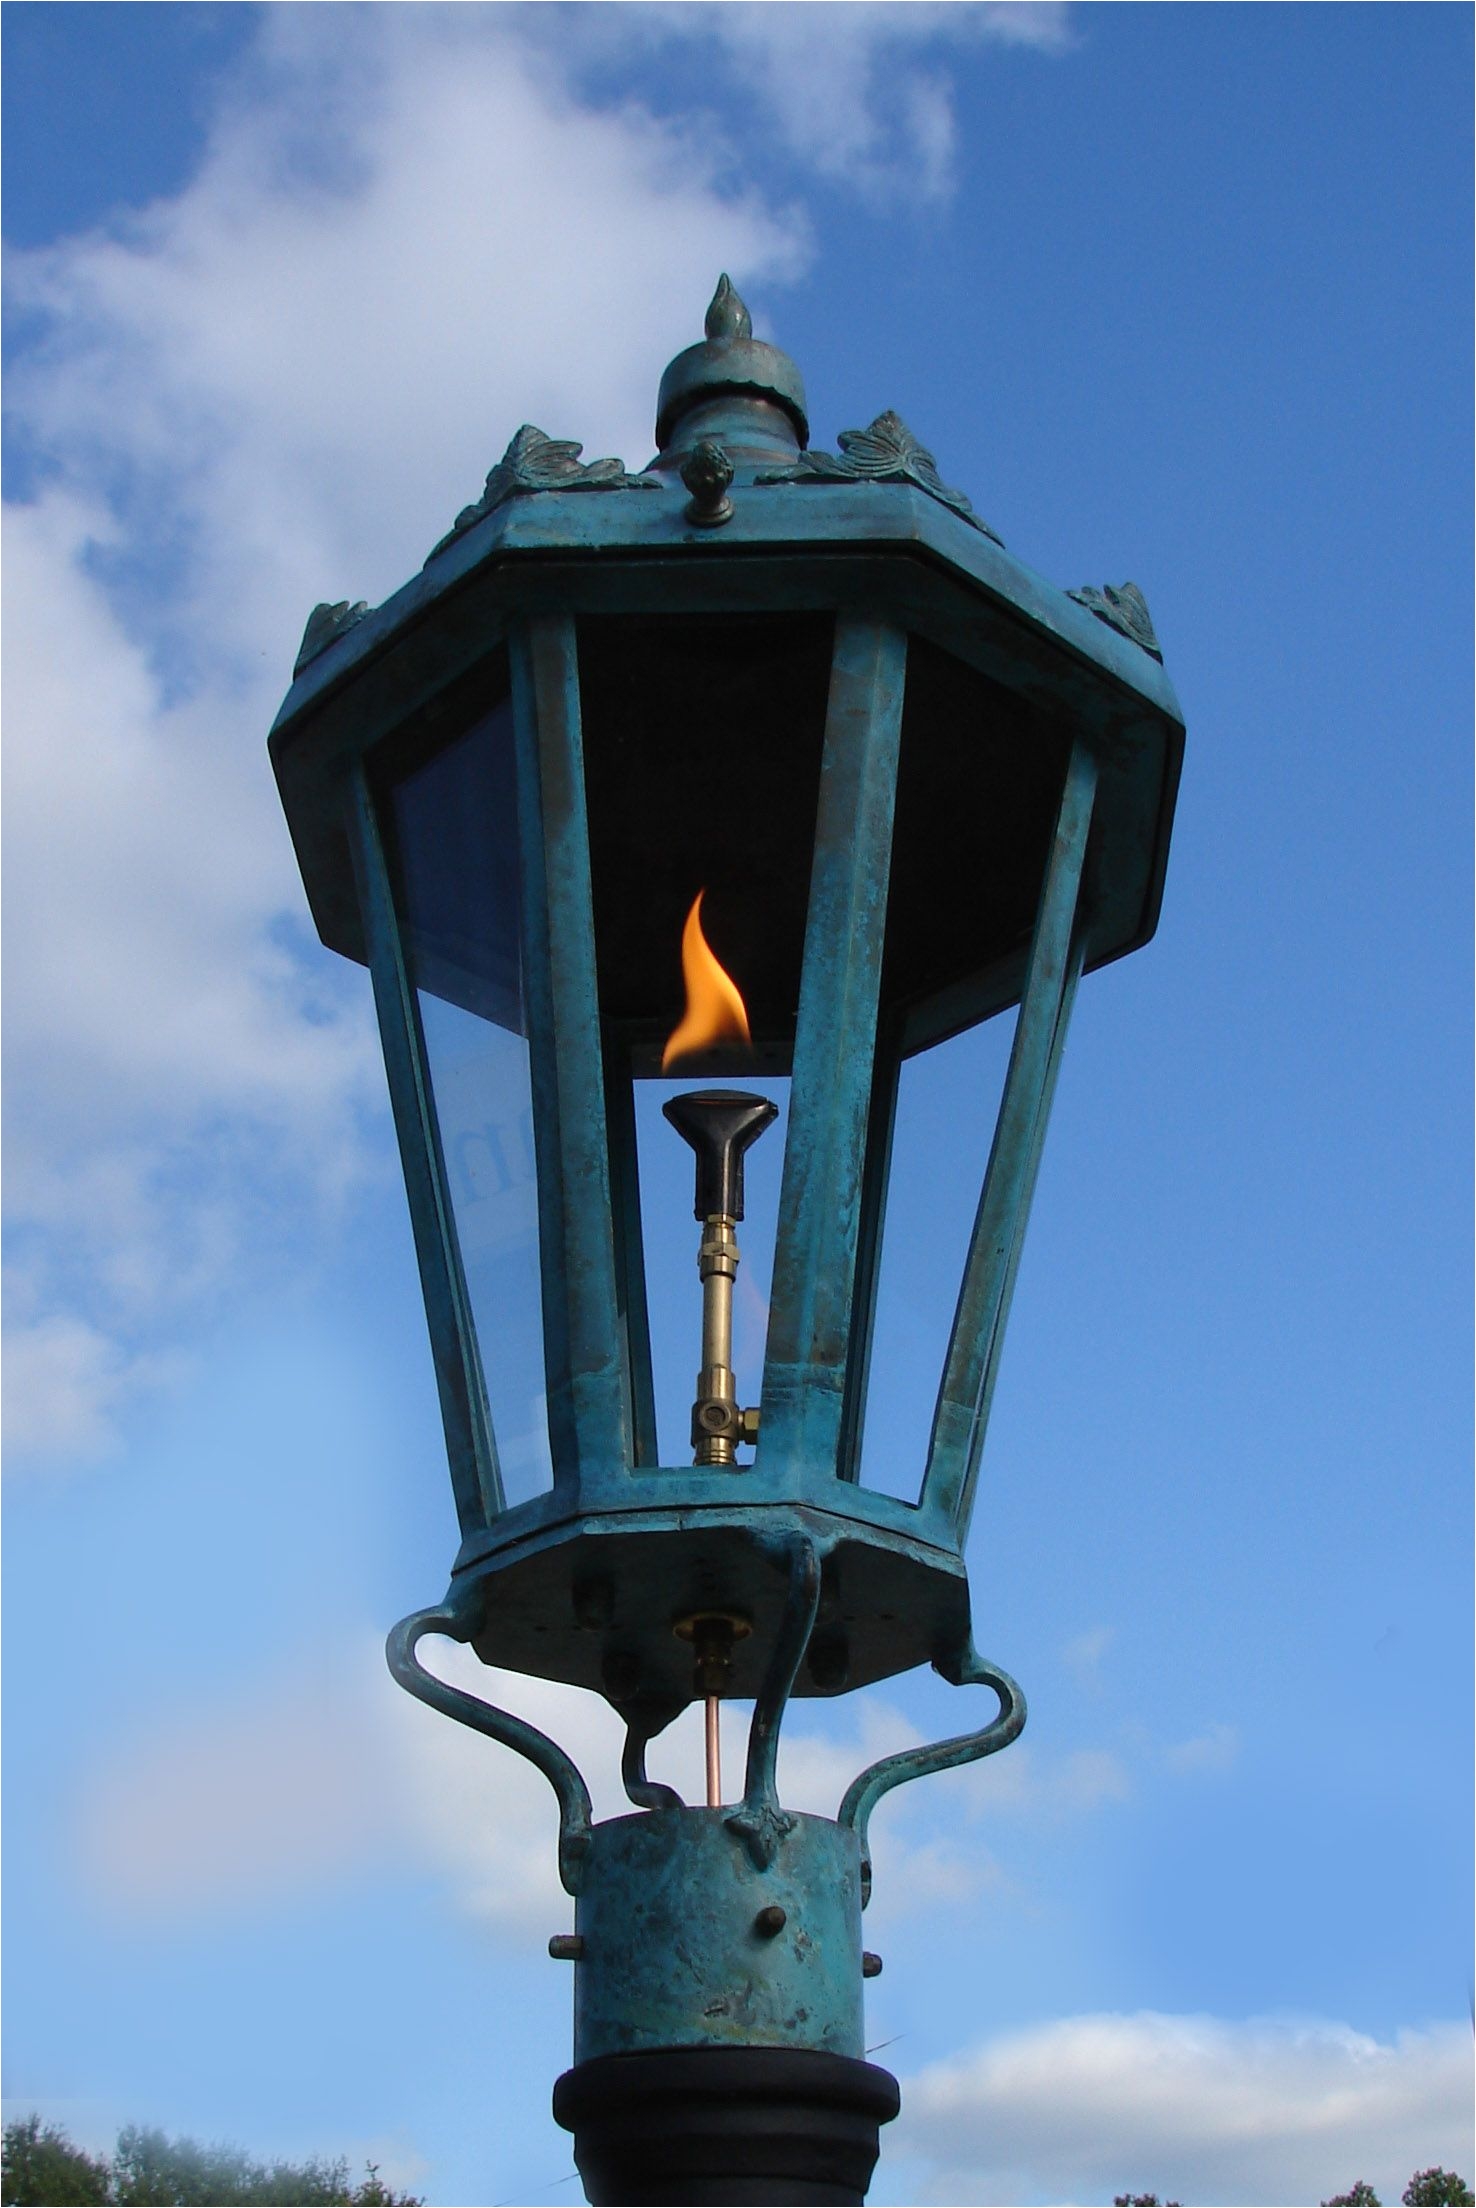 grande dame brass lantern in green verdigris post mount or wall mount